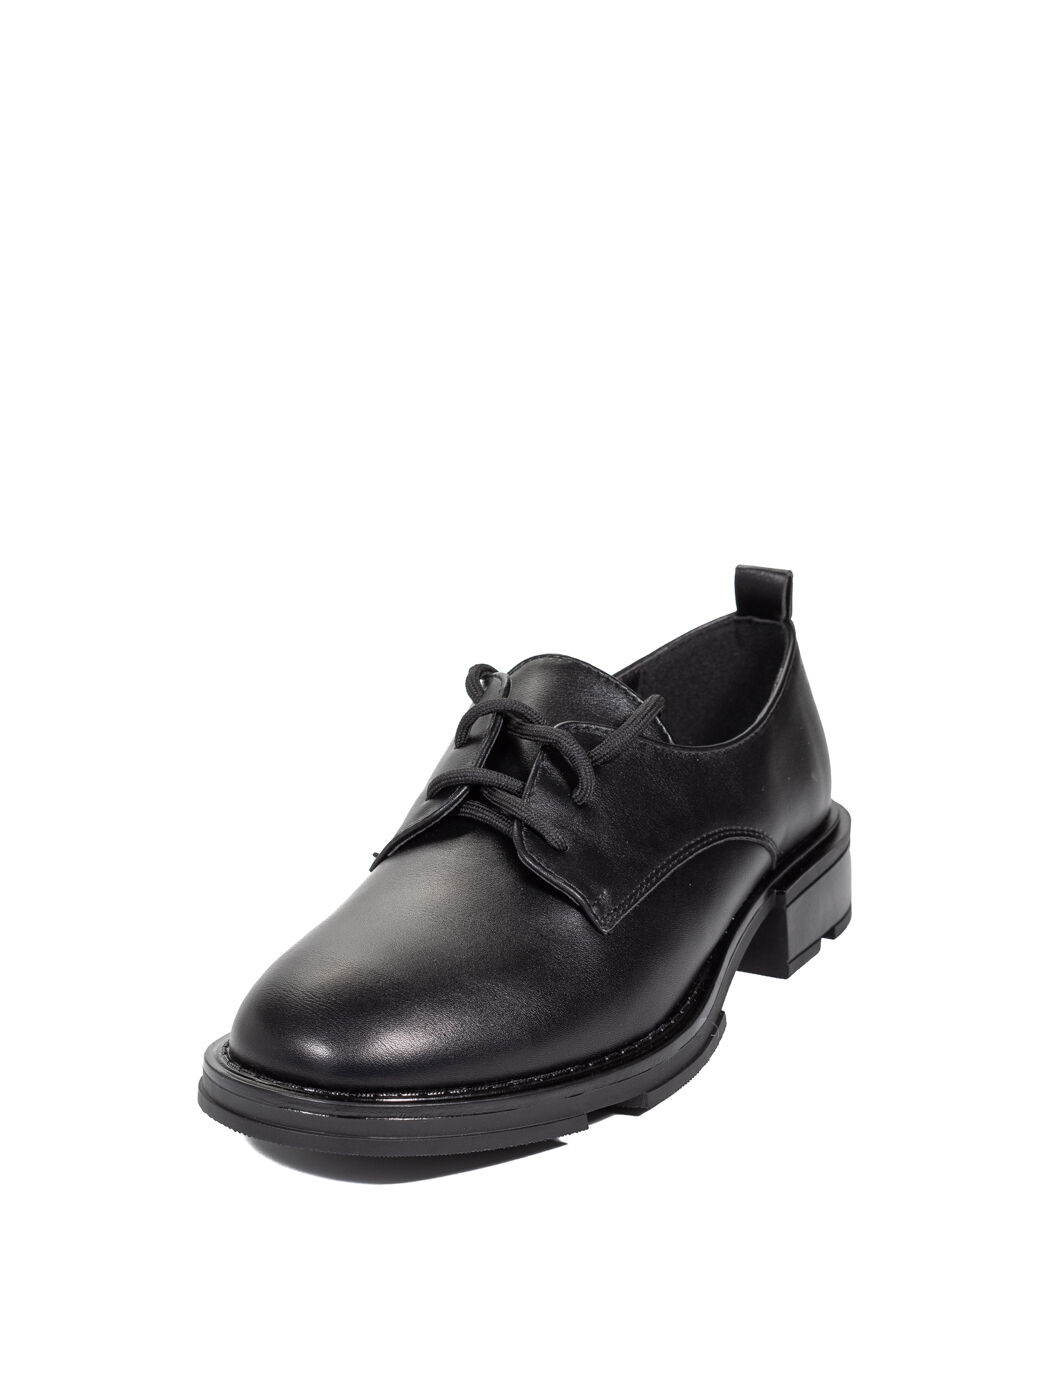 Туфли Oxfords женские черные экокожа каблук устойчивый демисезон 5M вид 0